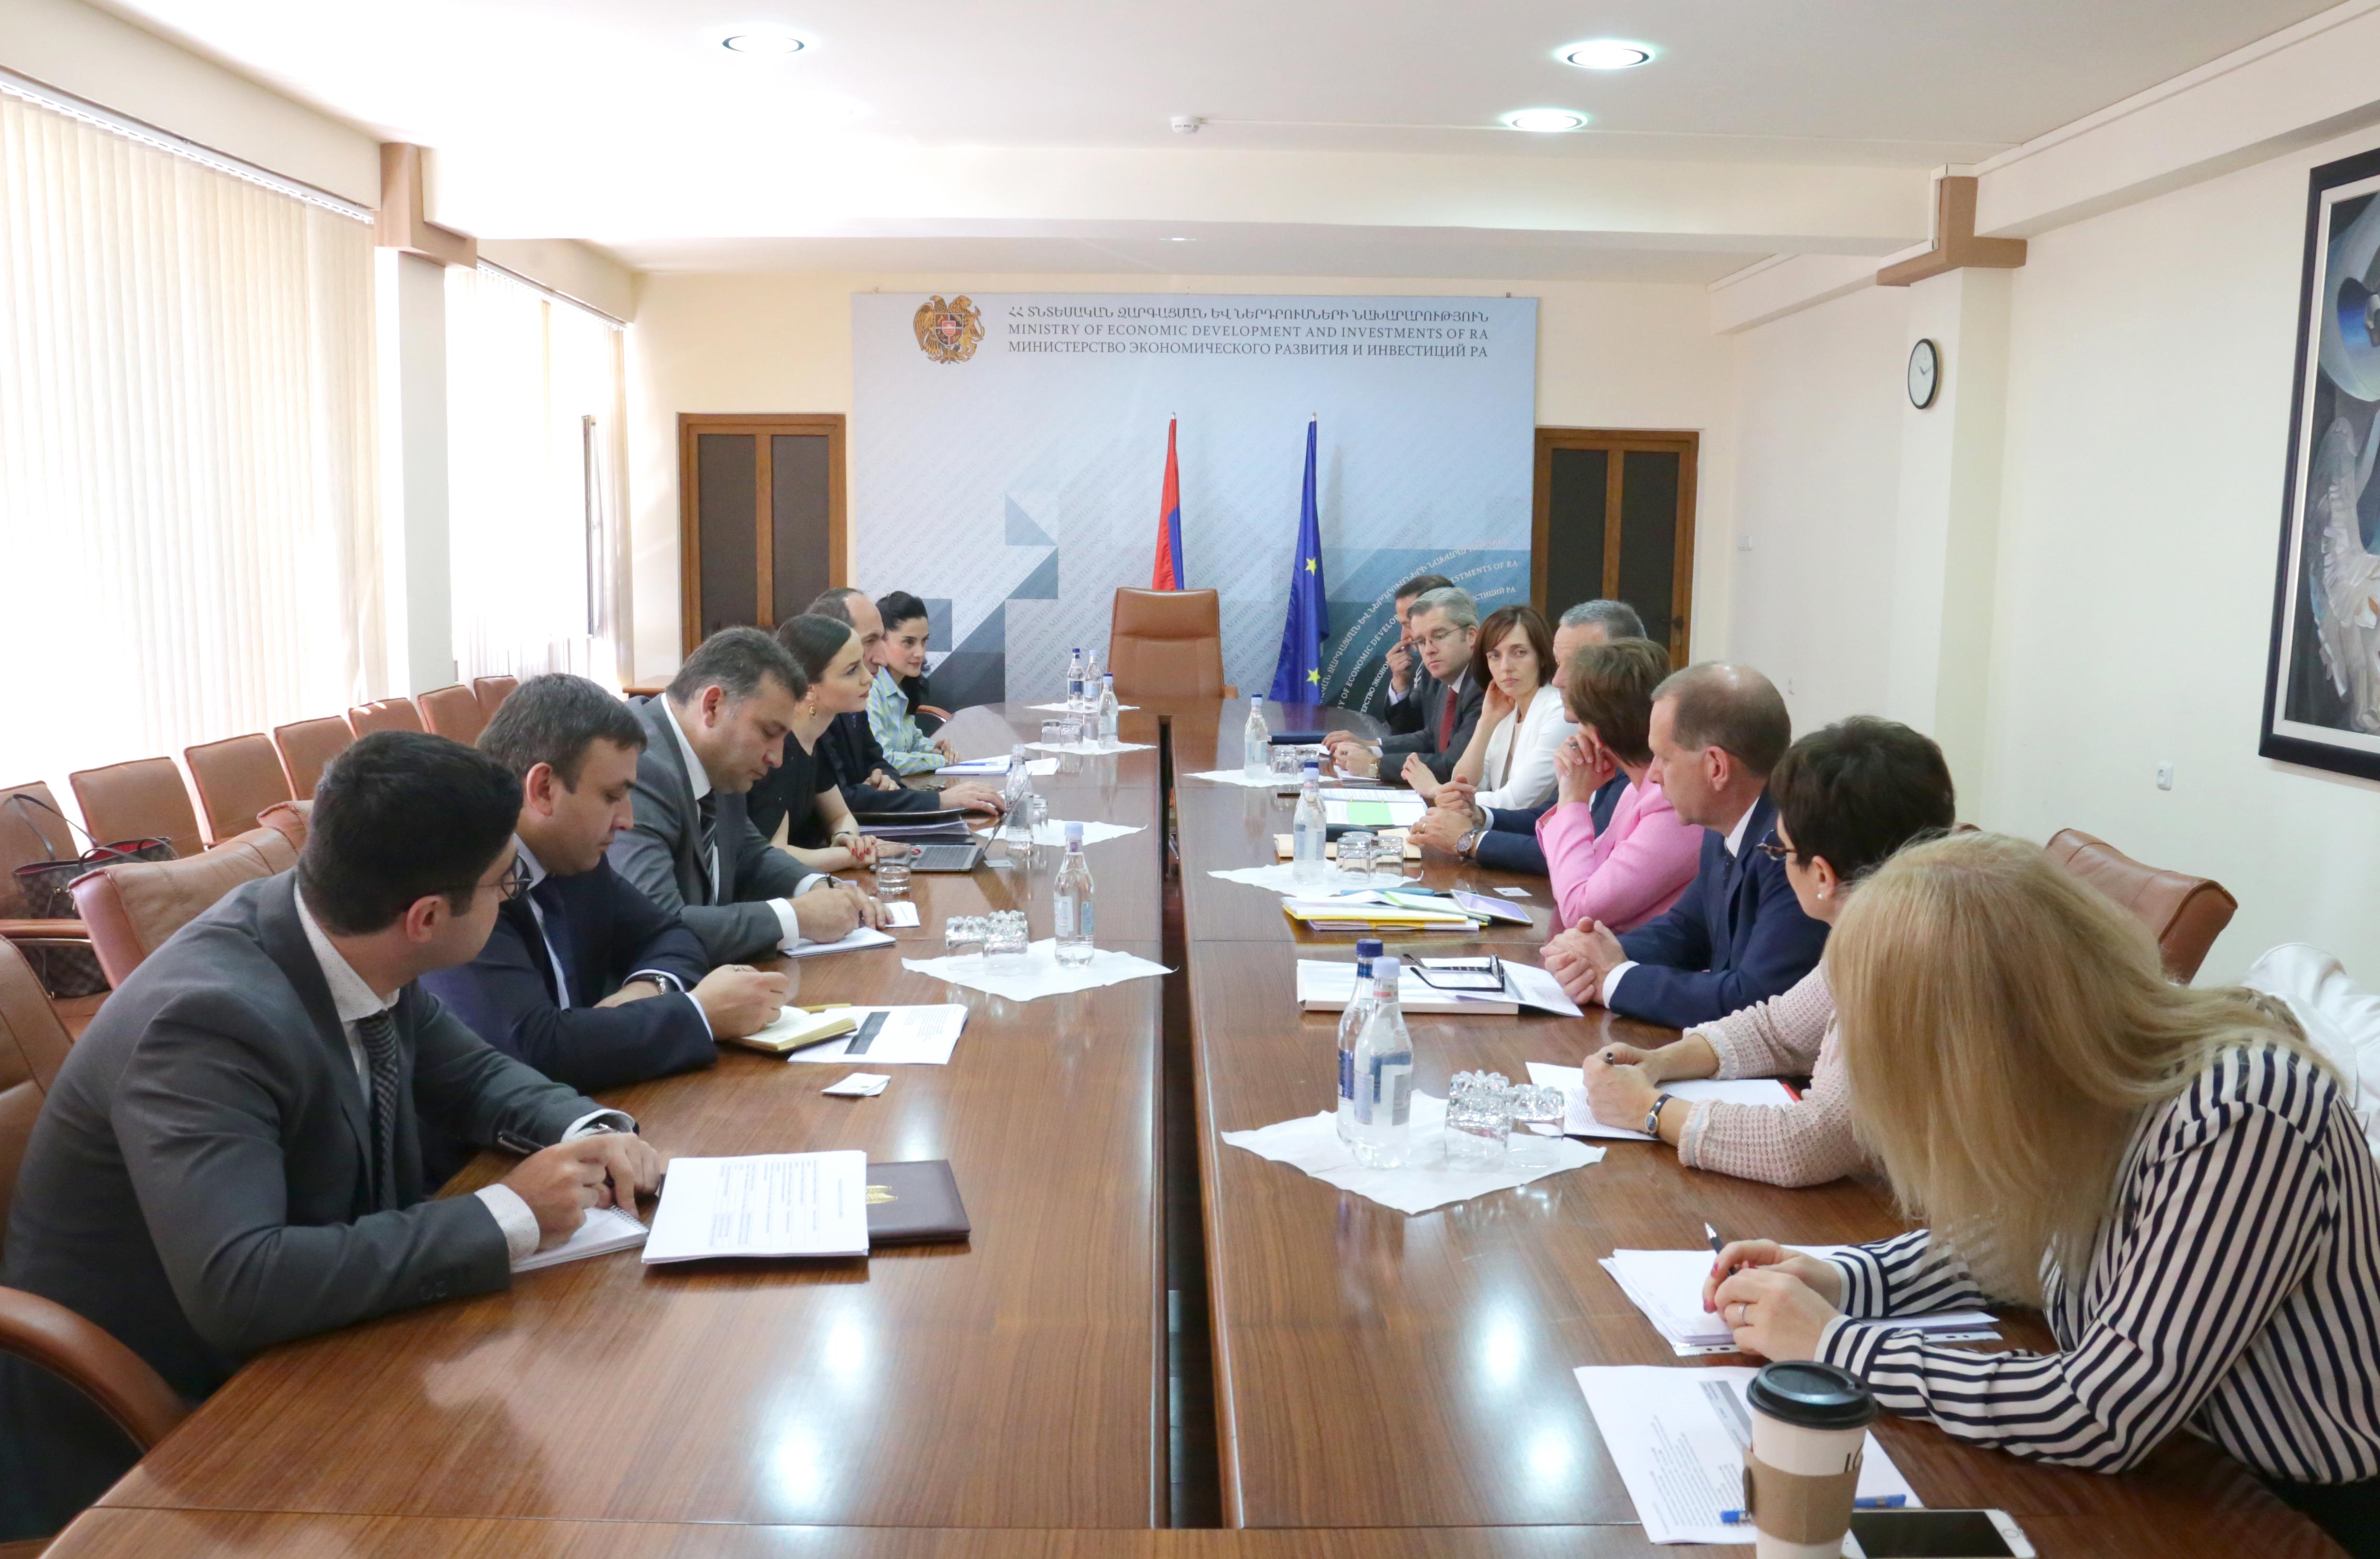 Քննարկվել են ԵՄ կողմից Հայաստանին տրամադրվող տեխնիկական և բյուջետային աջակցության ծրագրերին առնչվող հարցեր